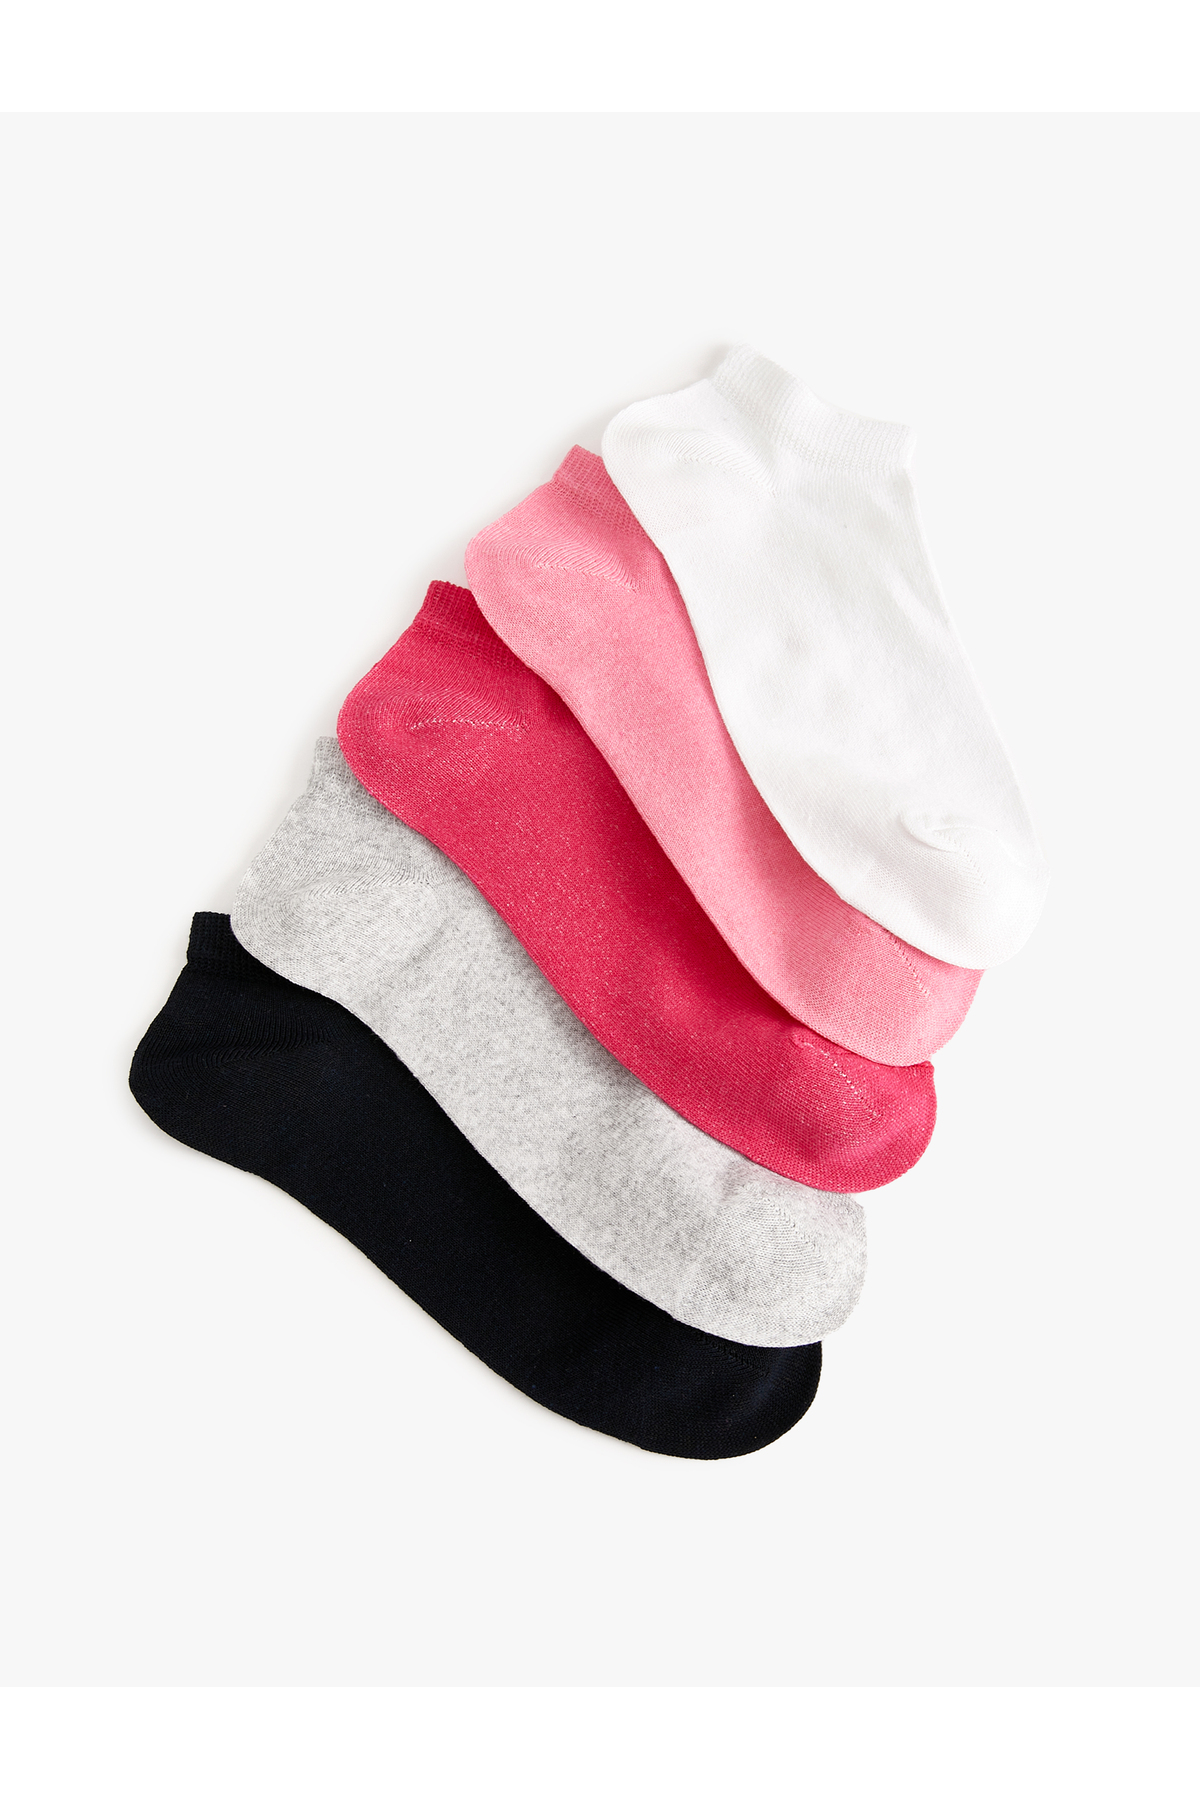 Koton Set of 5 Booties Socks Multicolored